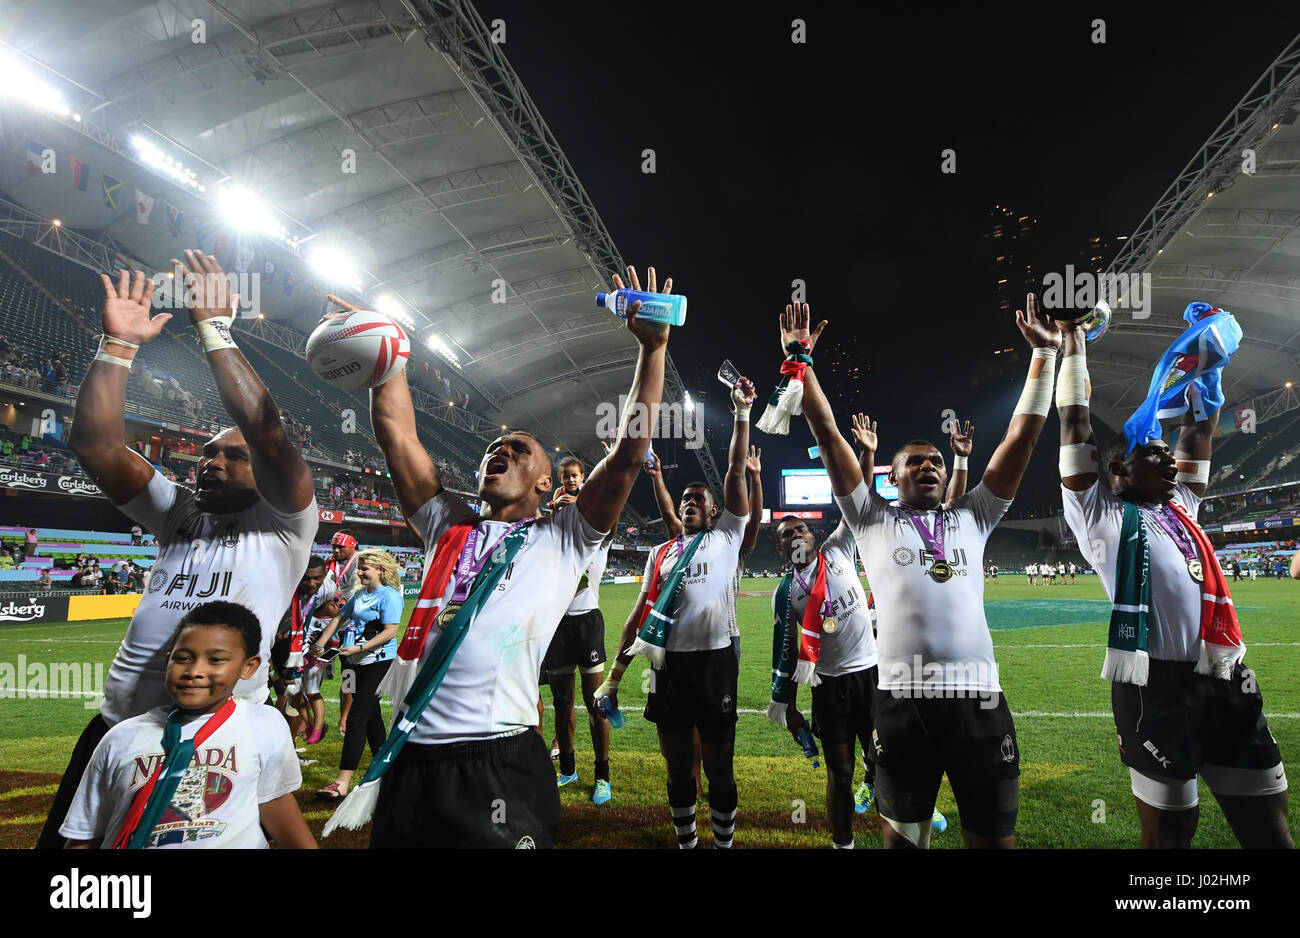 Hong Kong, China. 9 abr, 2017. Los jugadores de Fiji, celebrar el triunfo en la final de la Copa contra Sudáfrica del Torneo de Rugby Sevens de Hong Kong en Hong Kong, sur de China, 9 de abril de 2017. Fiji ganó 22-0. Crédito: Lui Siu Wai/Xinhua/Alamy Live News Foto de stock